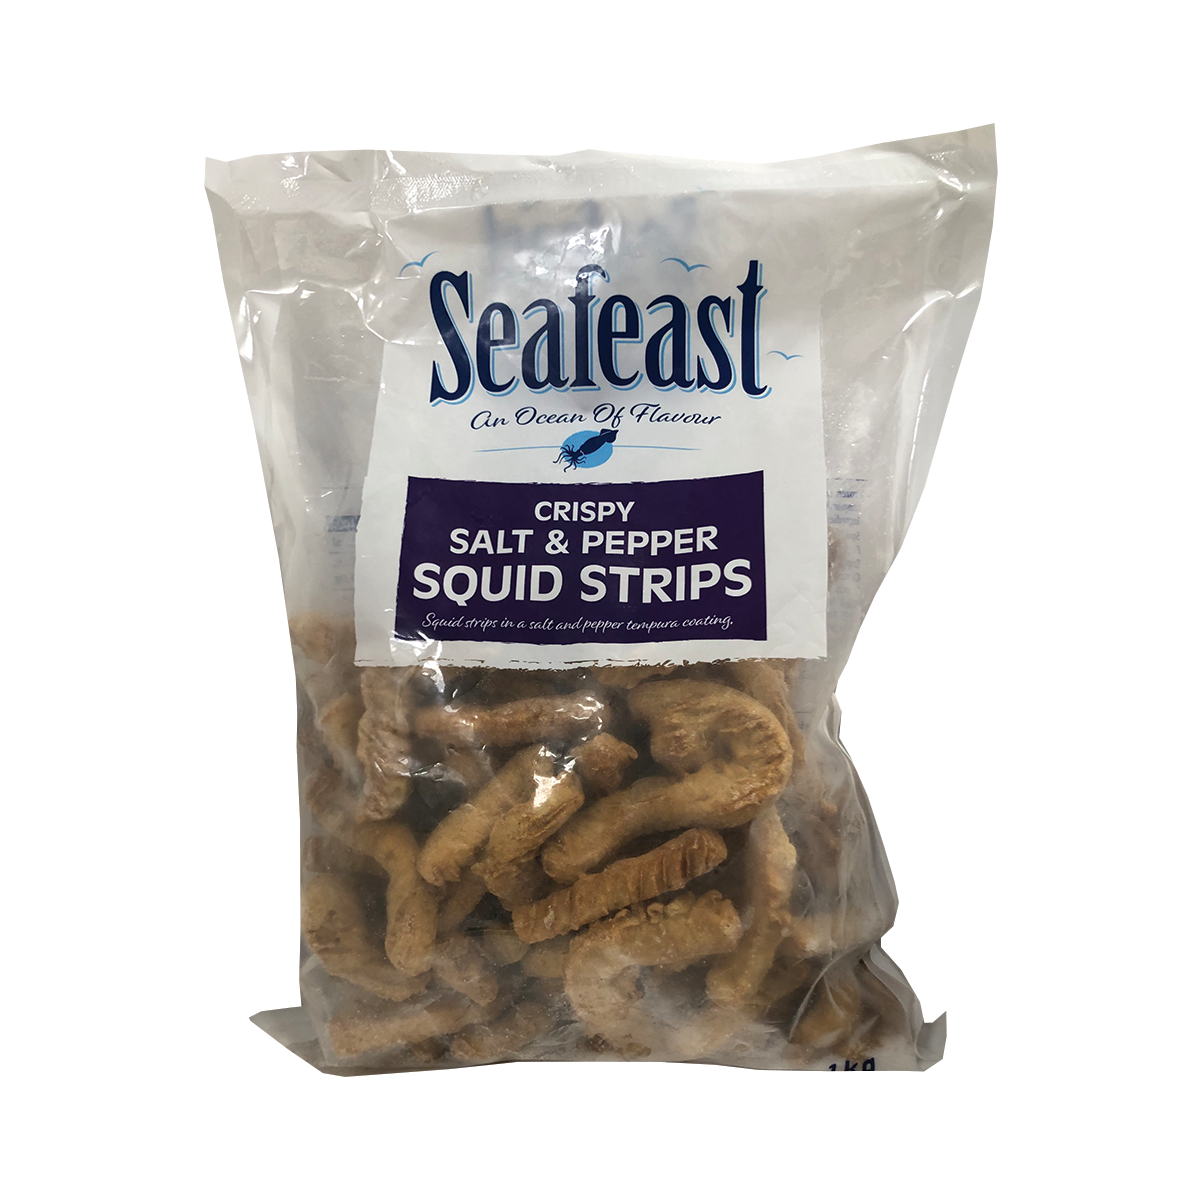 Seafeast Crispy Salt & Pepper Squid Strips